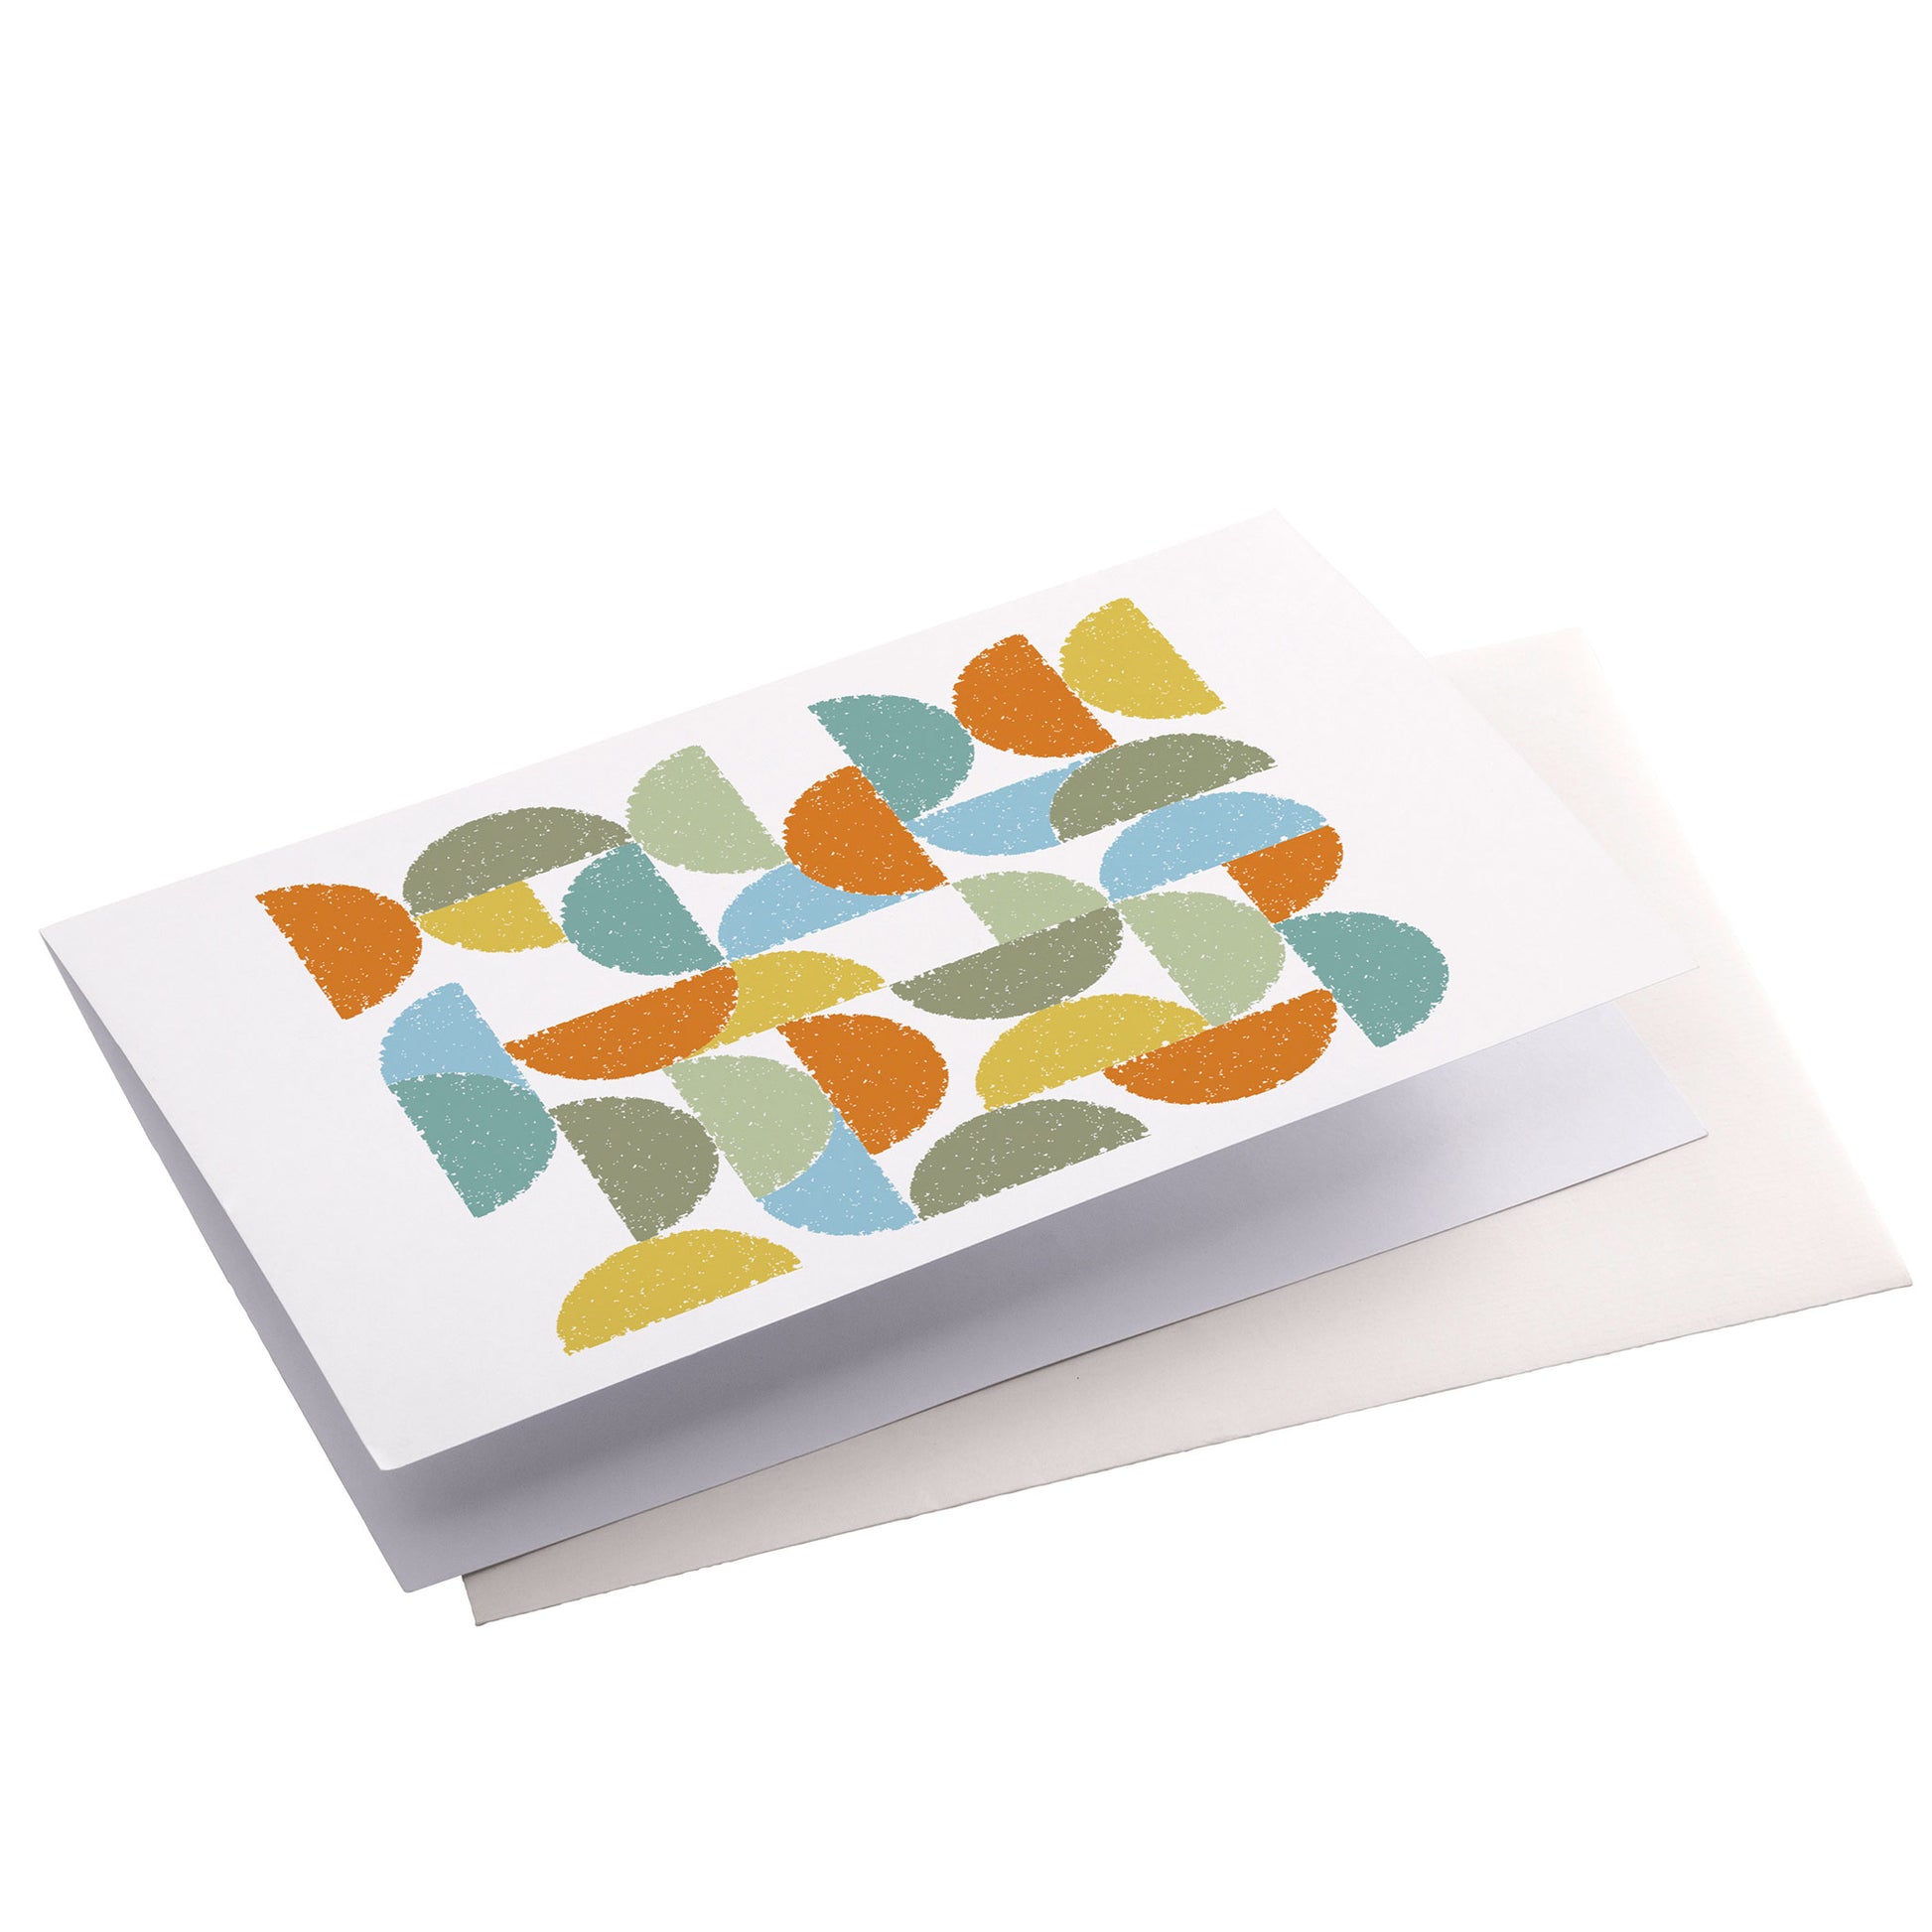 Productafbeelding, wenskaart "ronde kleuren naar terra", zijaanzicht liggend met een envelop